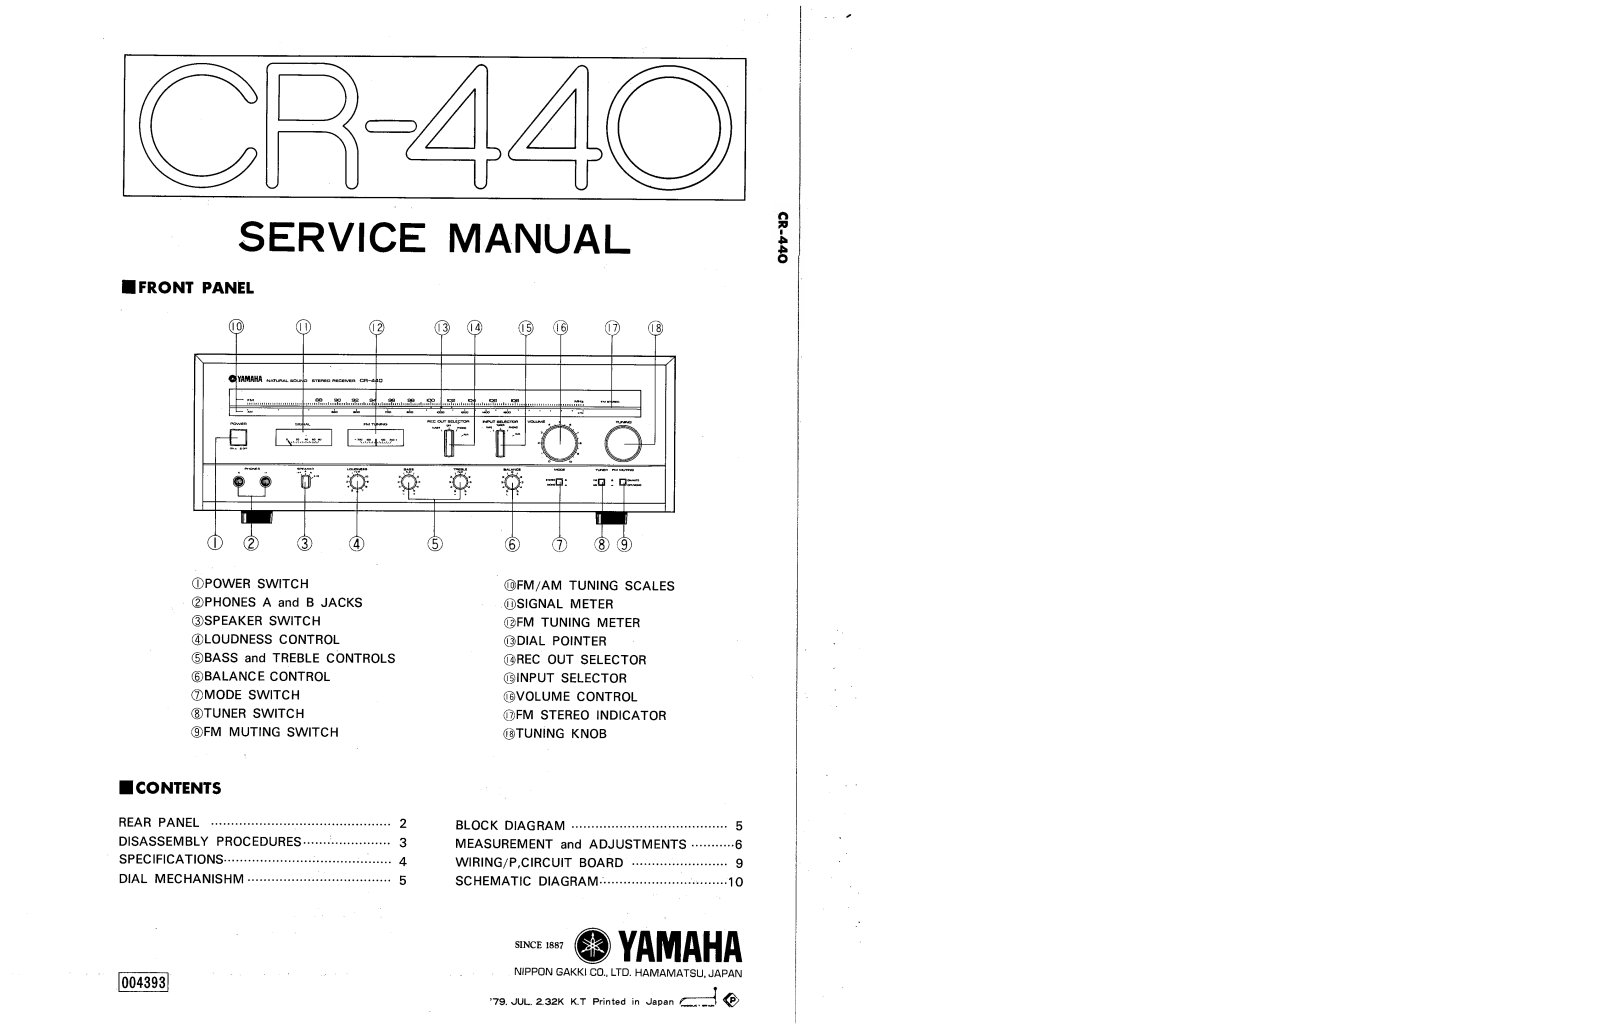 Yamaha CR-440 Service Manual